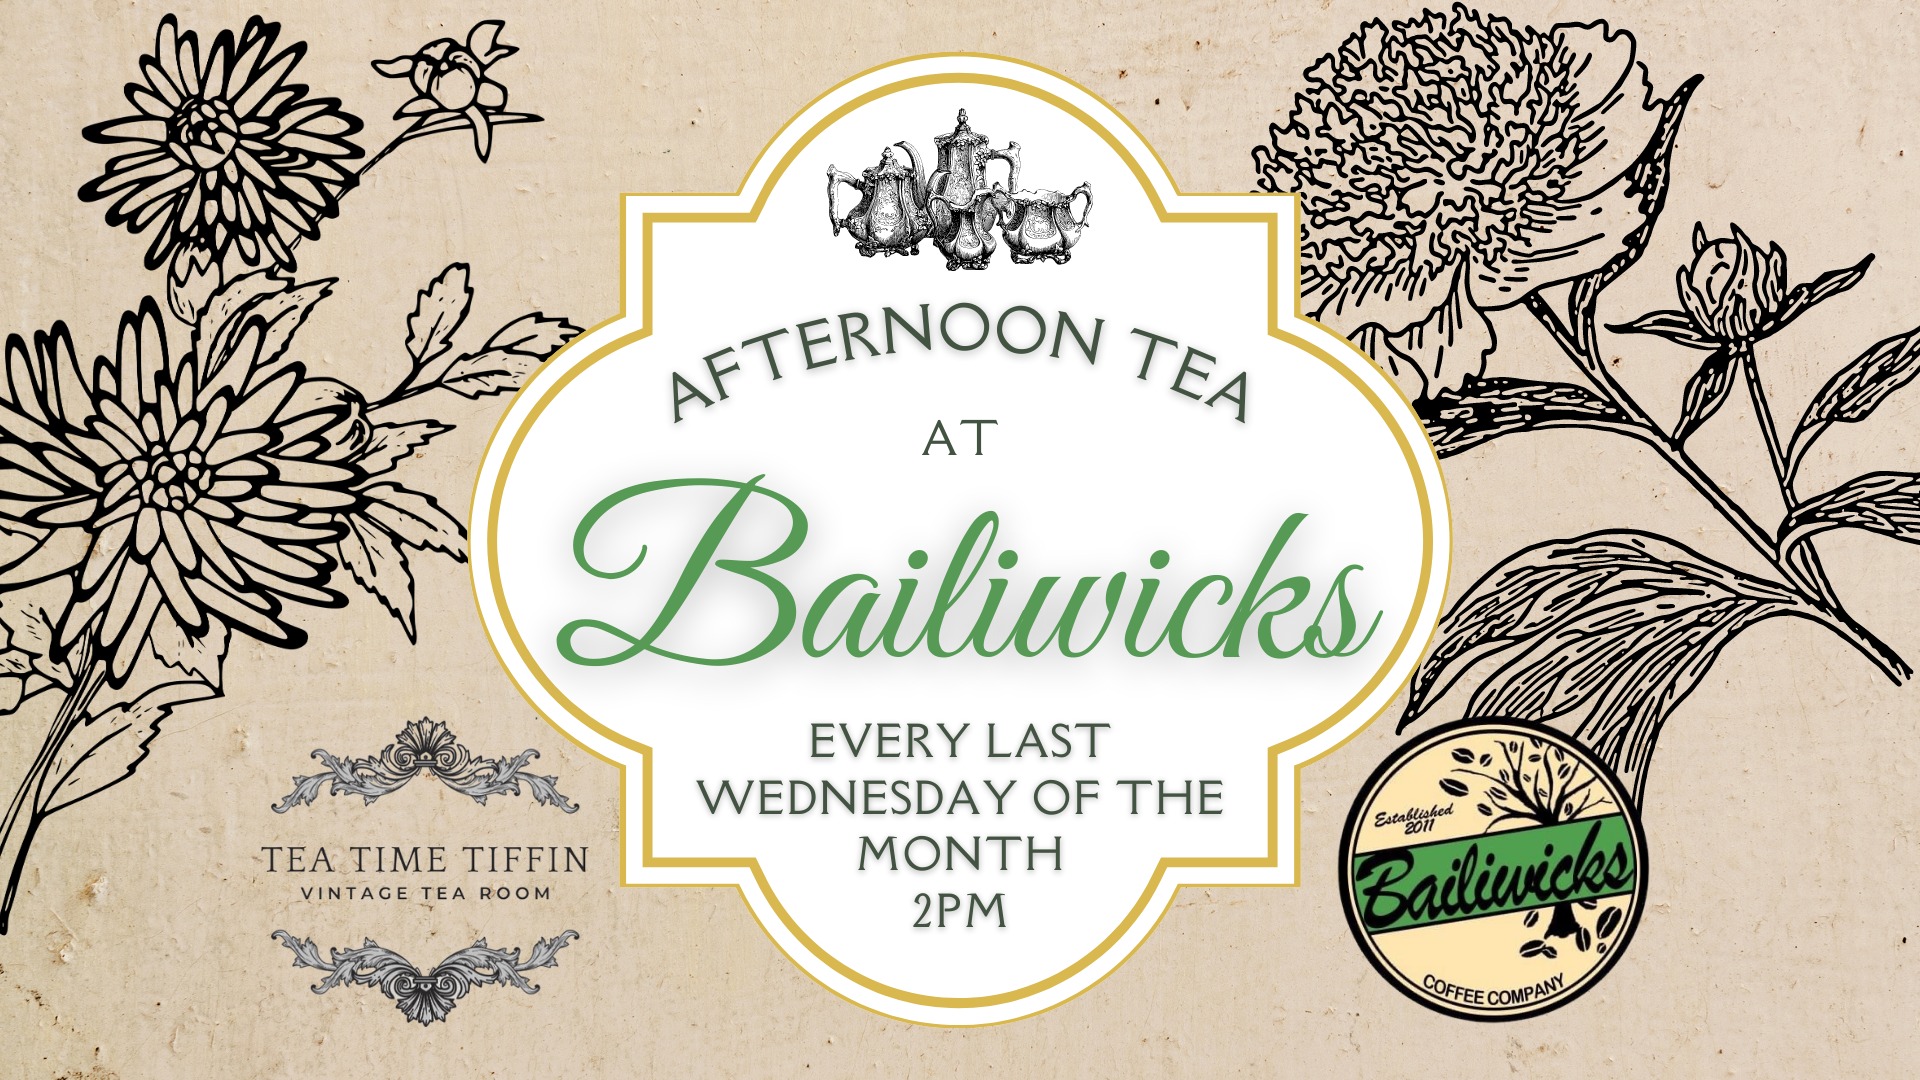 Afternoon Tea at Bailiwicks